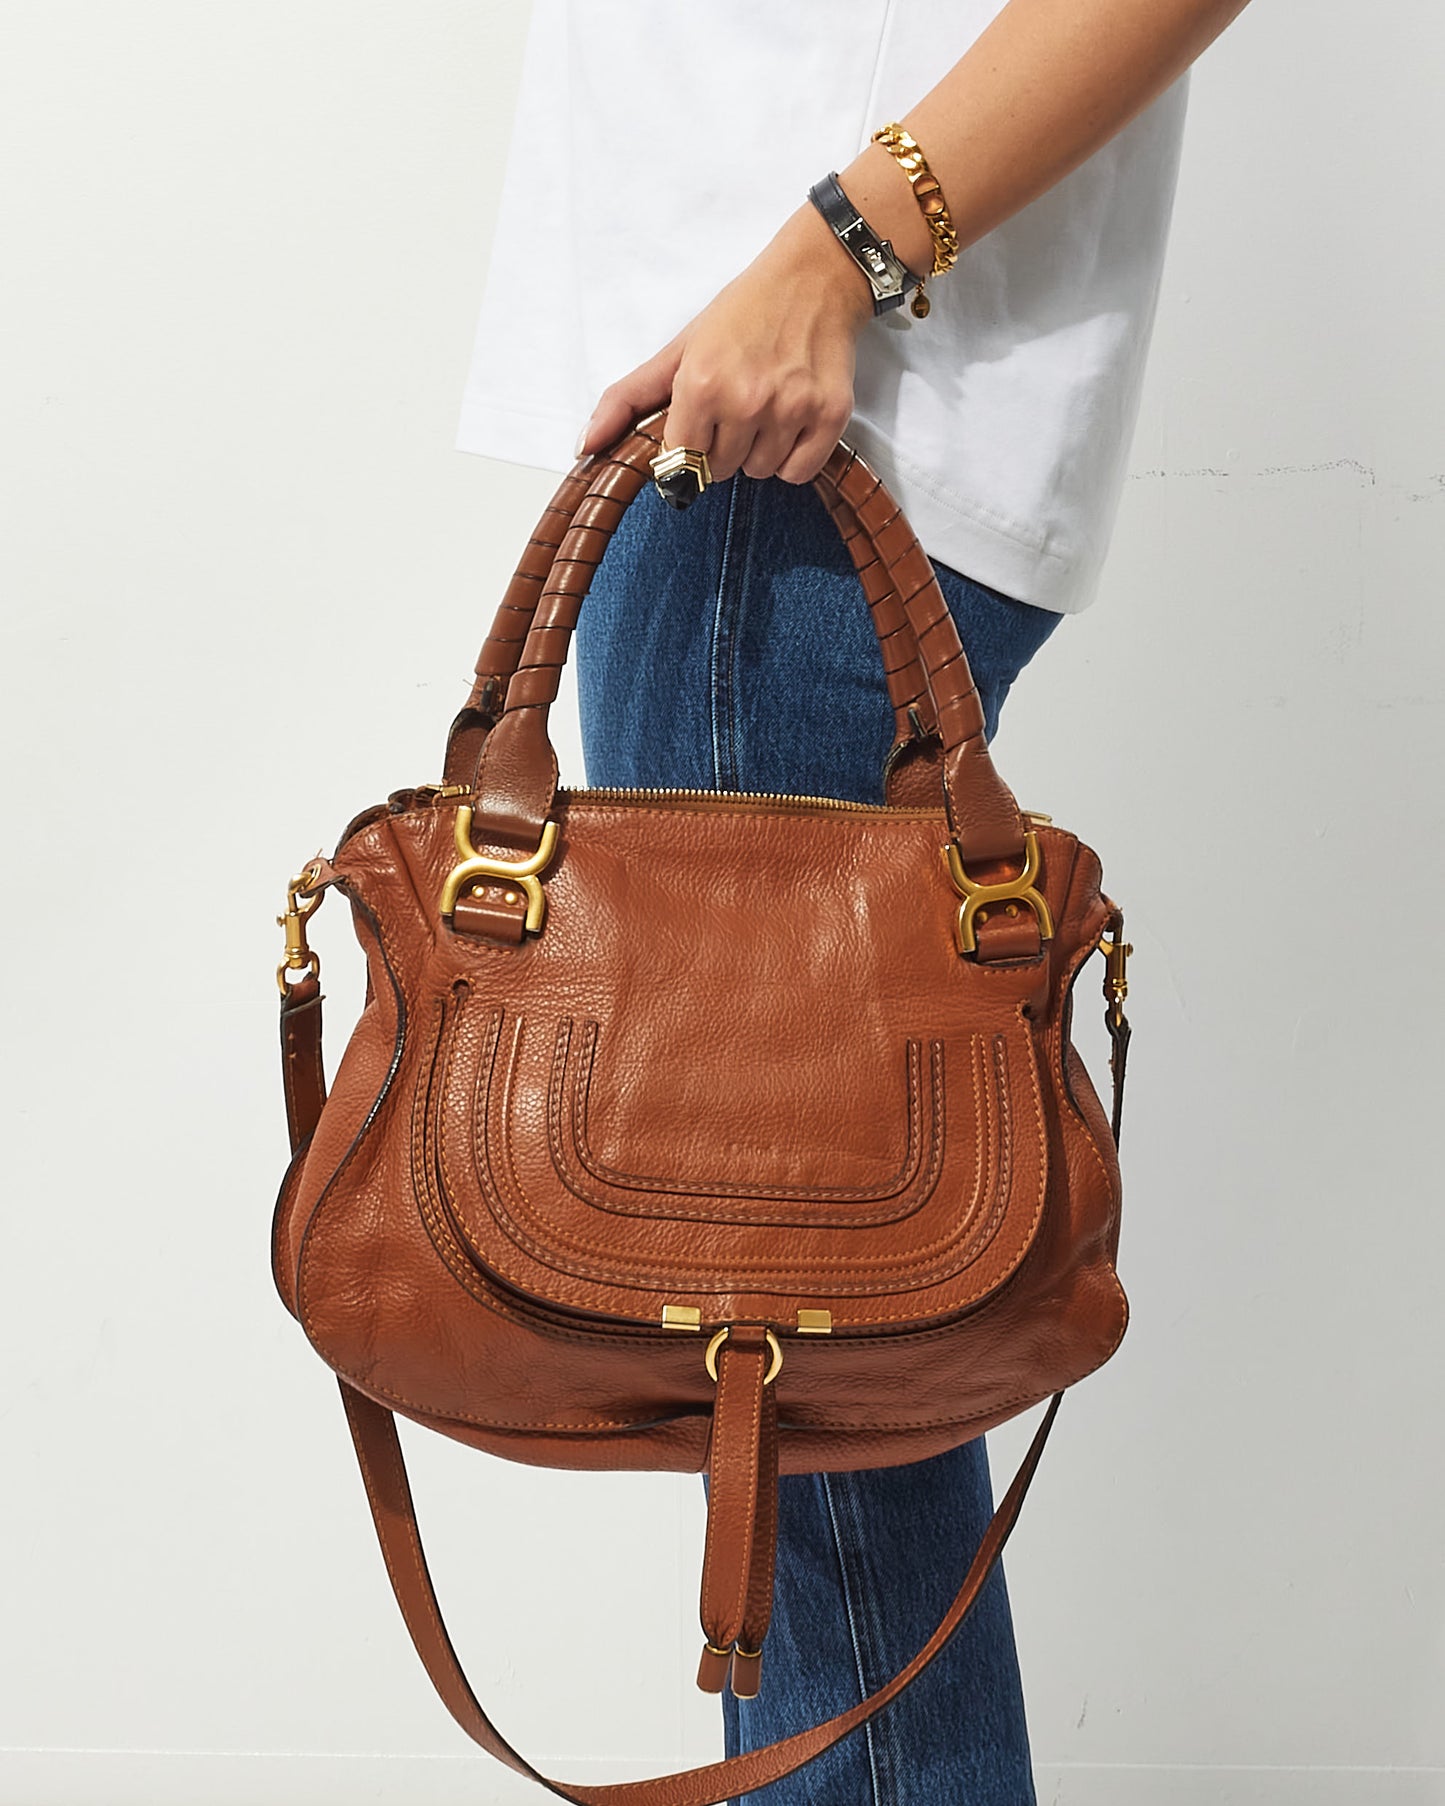 Chloé Tan Leather Marcie Double Carry Bag